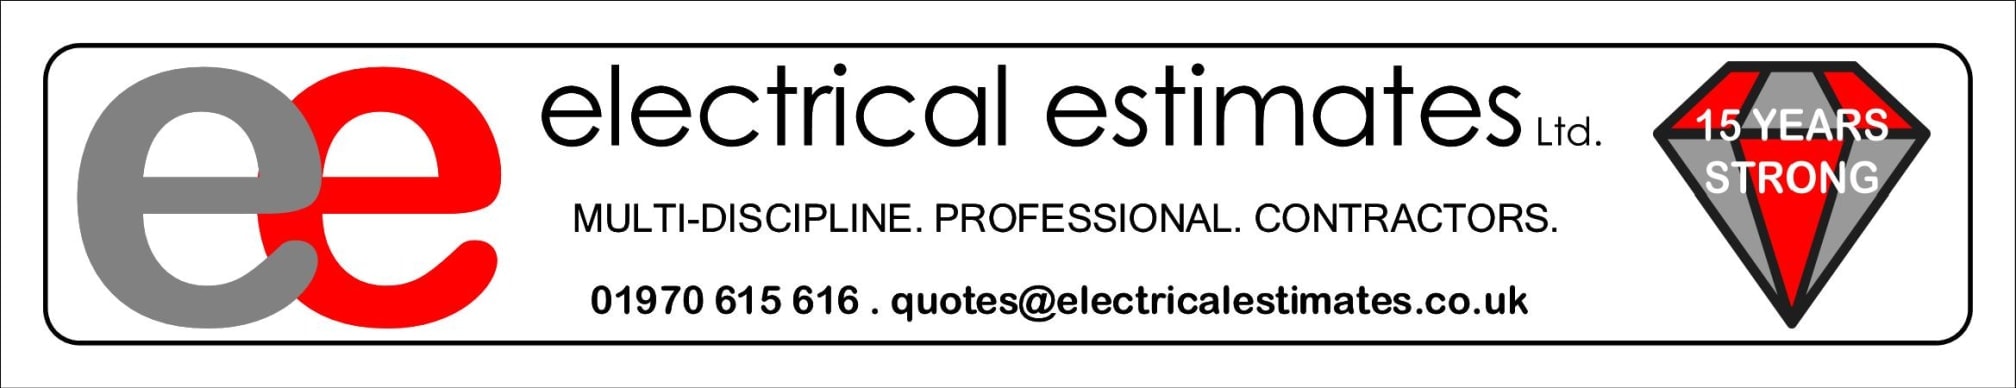 Images Electrical Estimates Ltd